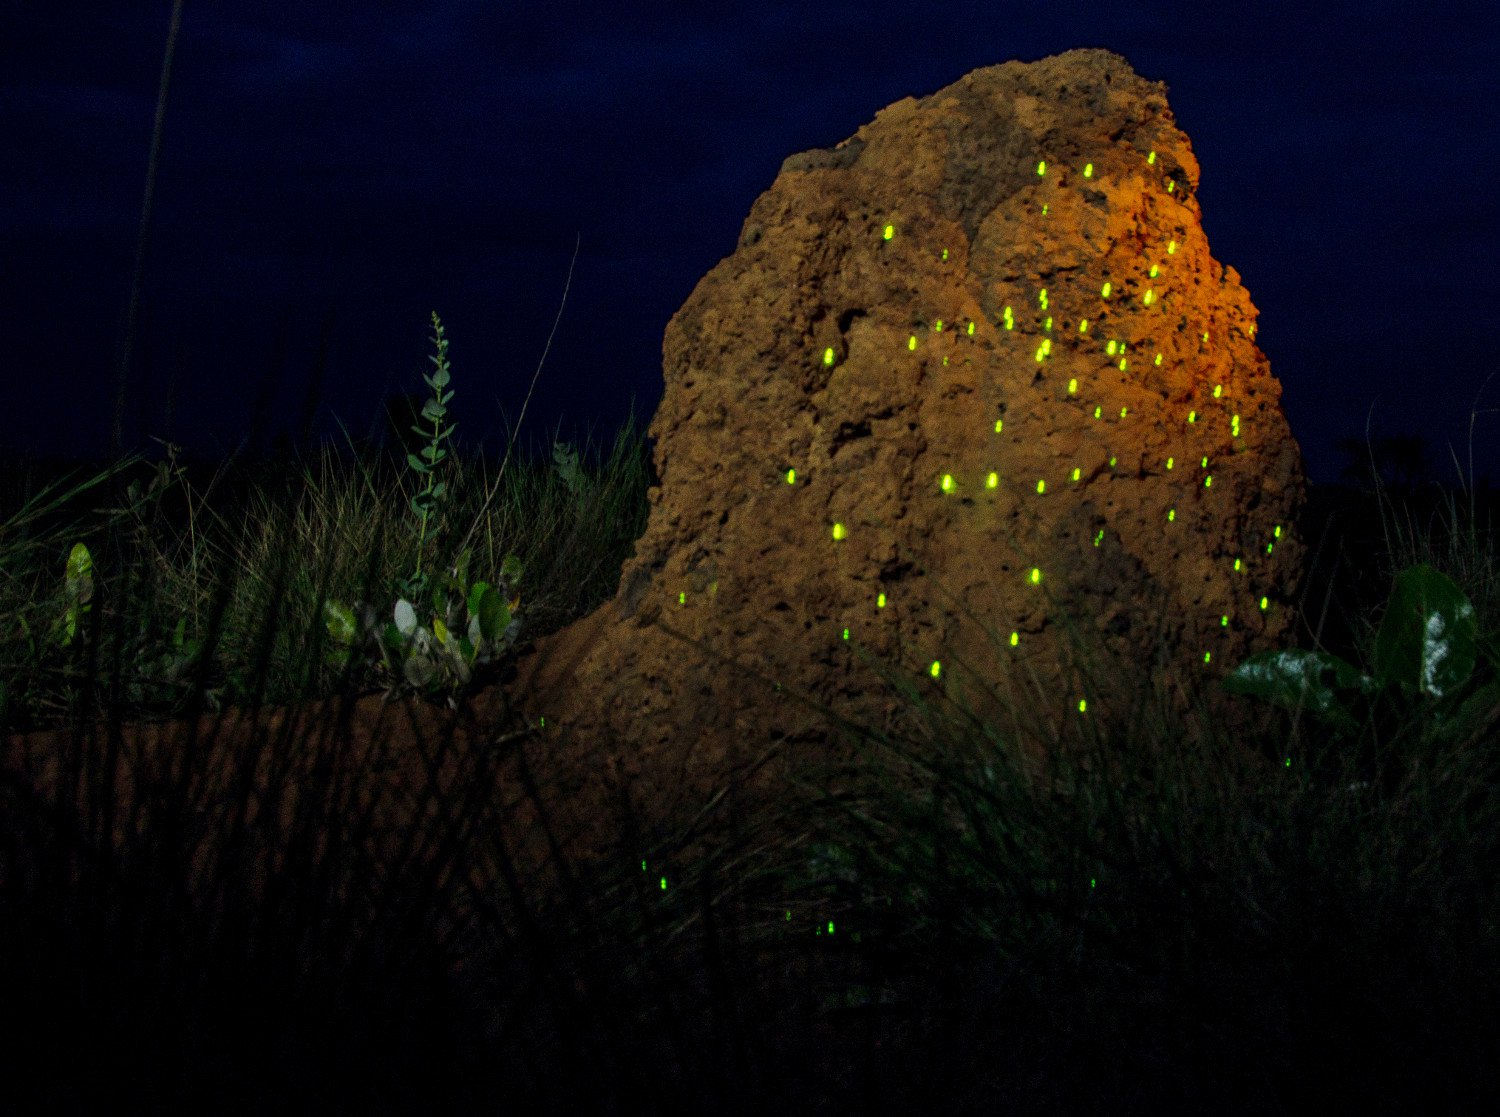 Bioluminescncia no Parque Nacional das Emas, em Gois